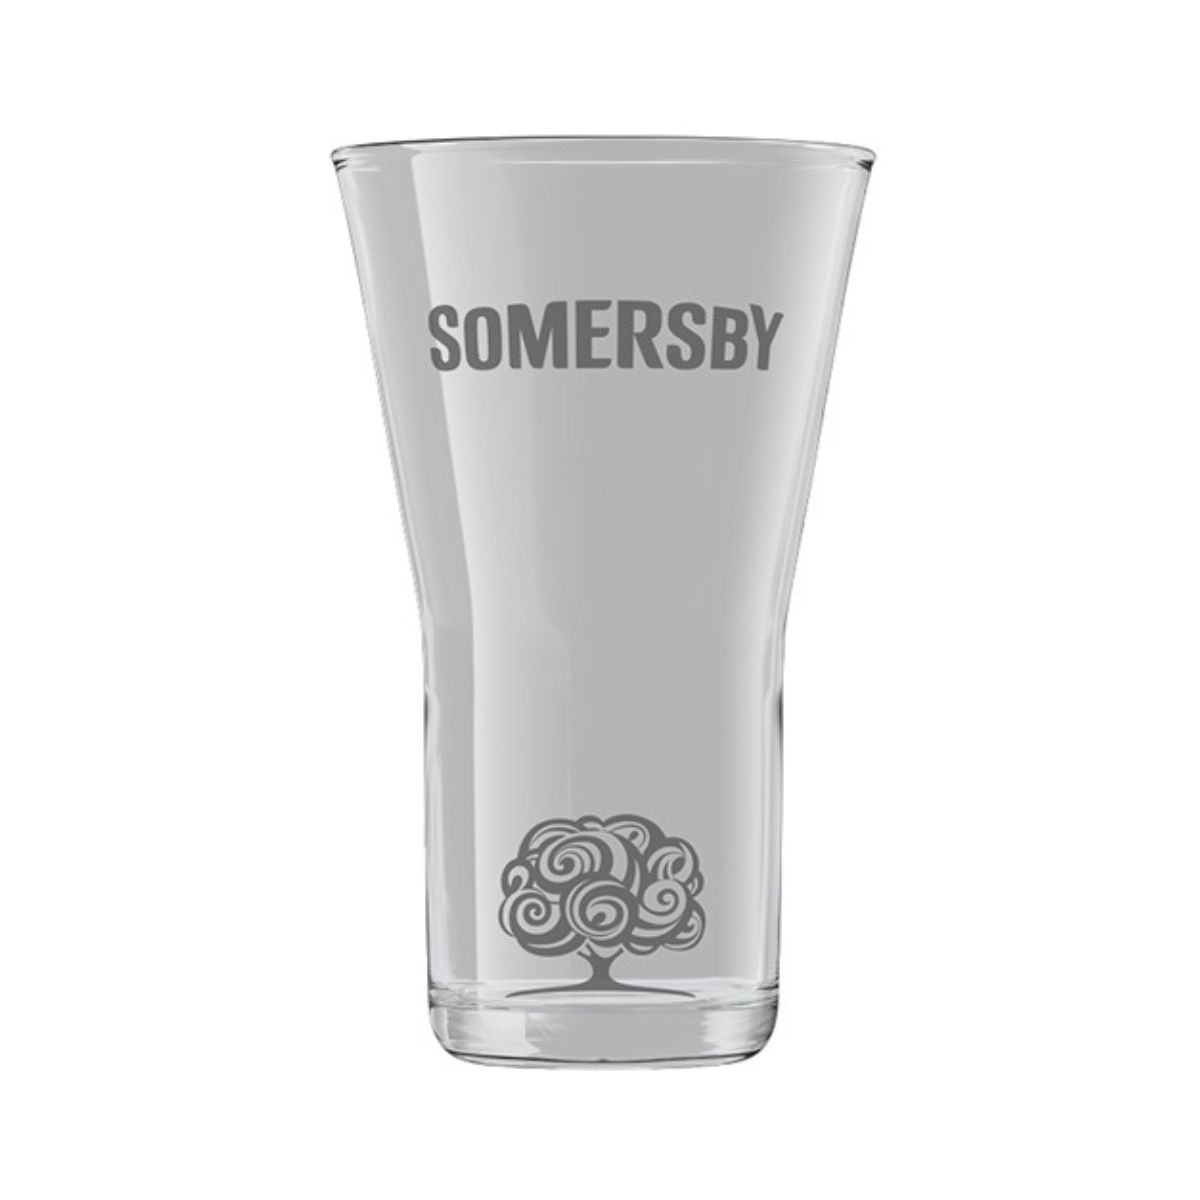 Somersby 0,5l Glass